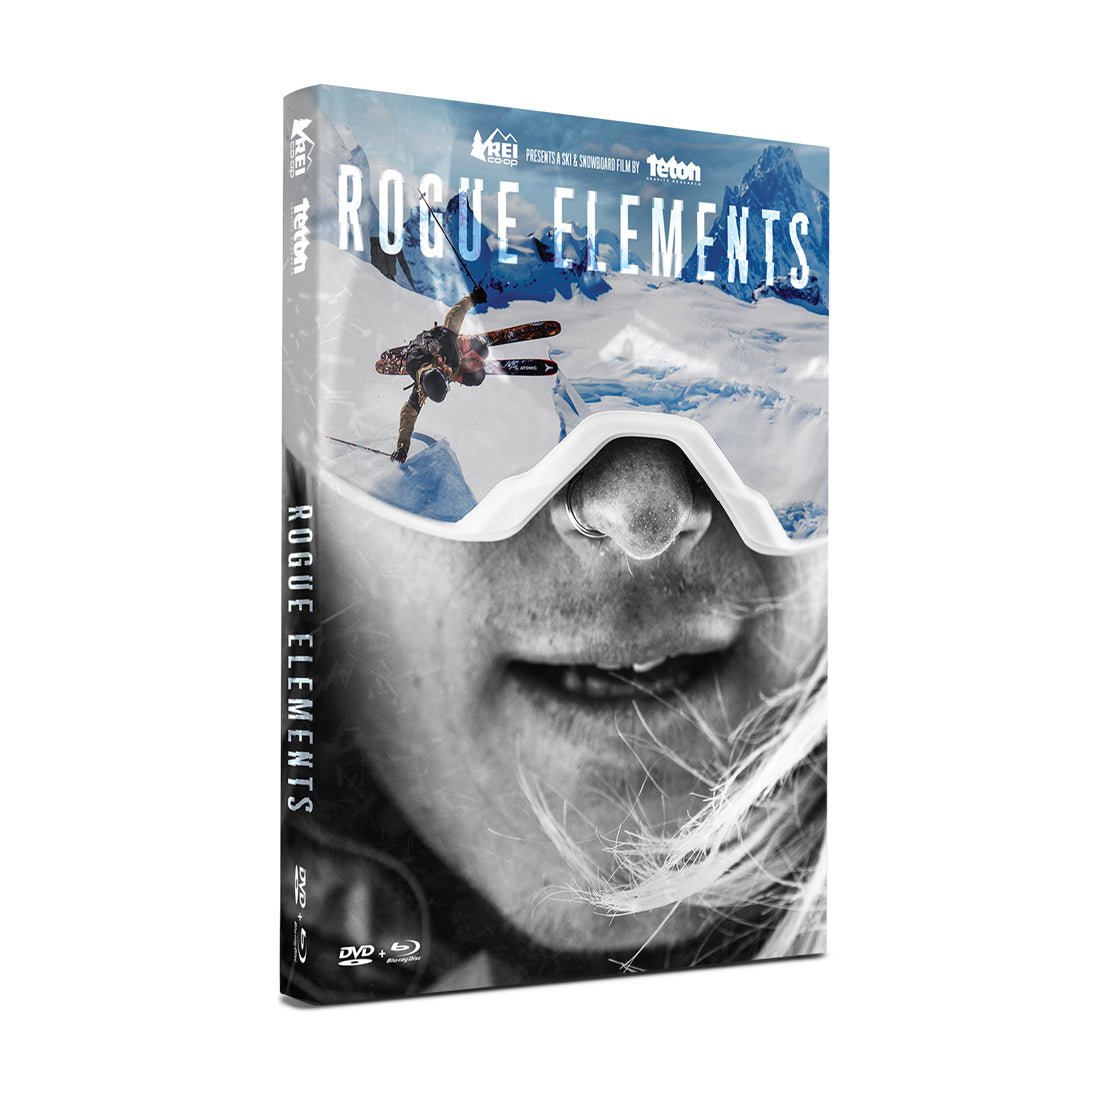 Rogue Elements DVD/BR - Teton Gravity Research